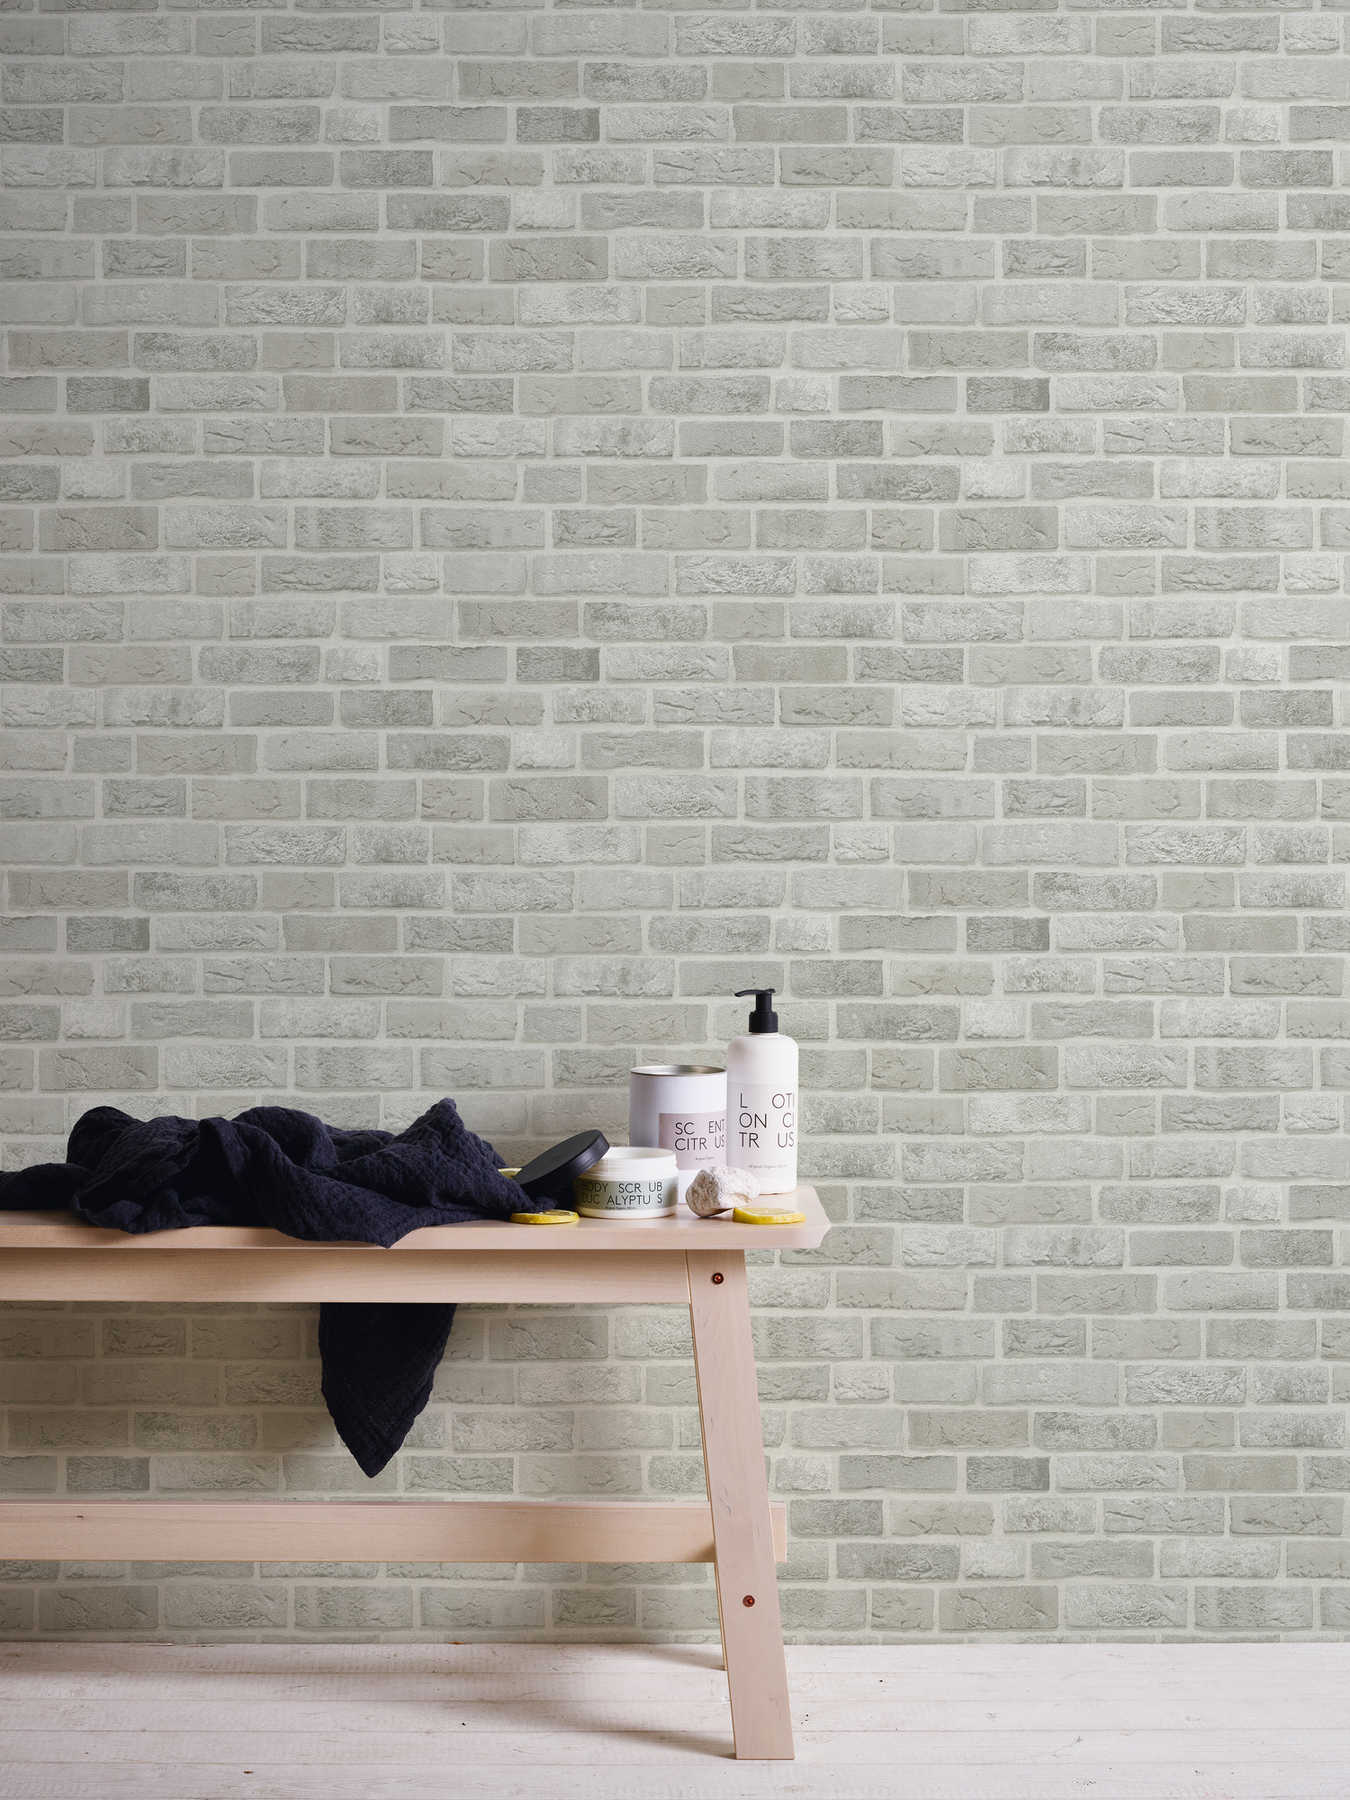             papel pintado diseño de pared de ladrillo 3D aspecto de piedra - gris, blanco
        